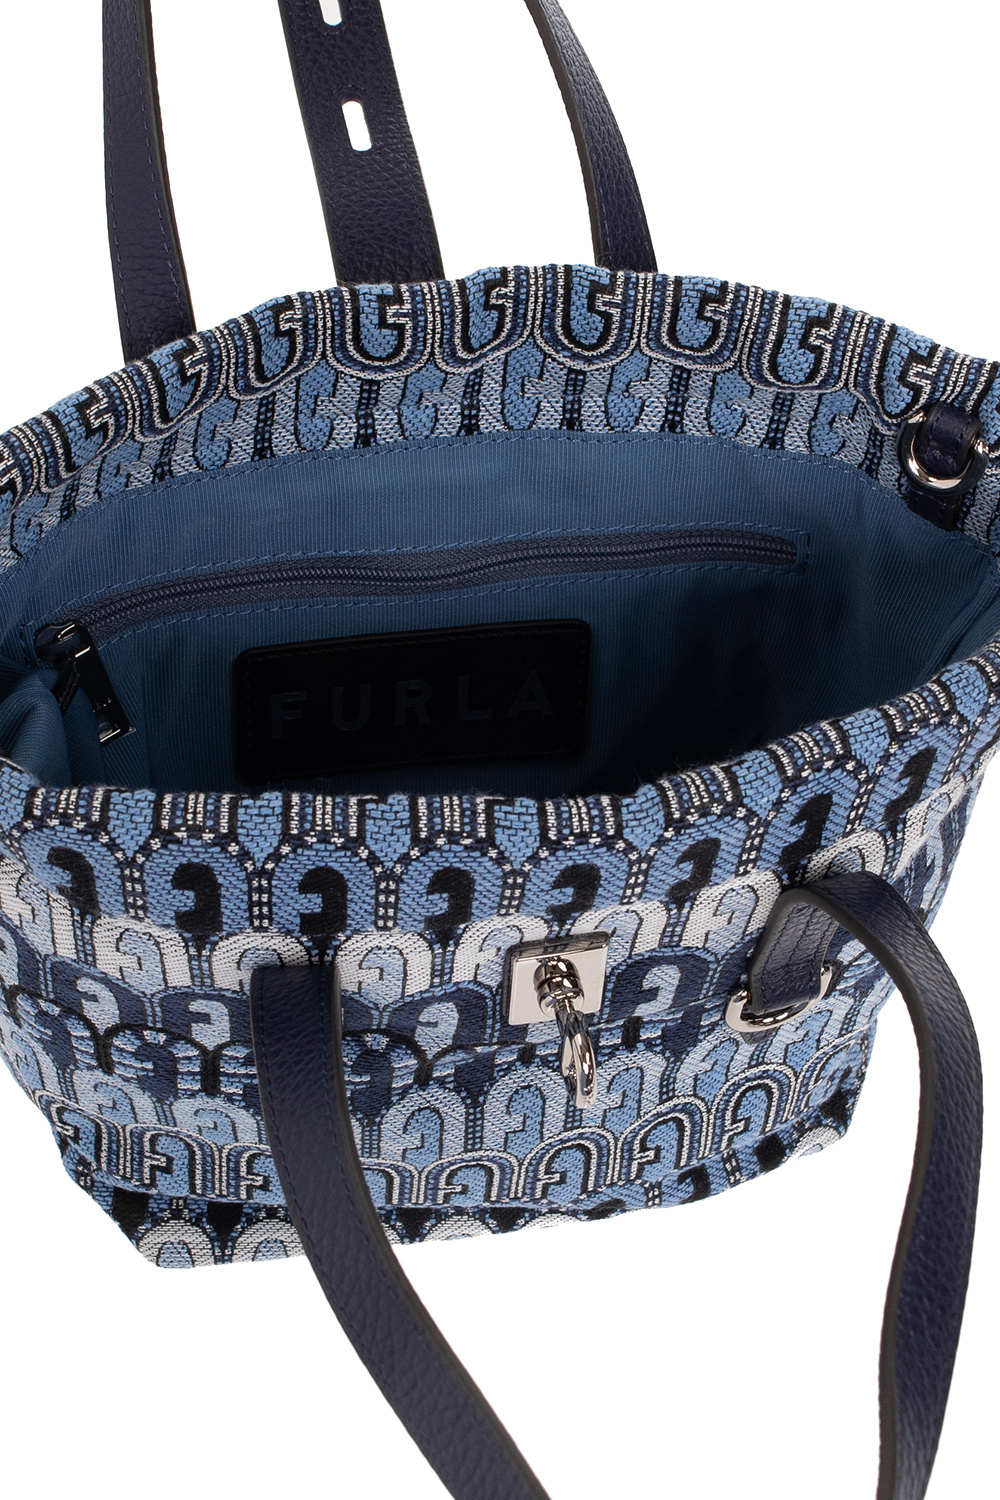 Christian Dior Pre-Owned Trotter Shoulder Bag in Blue